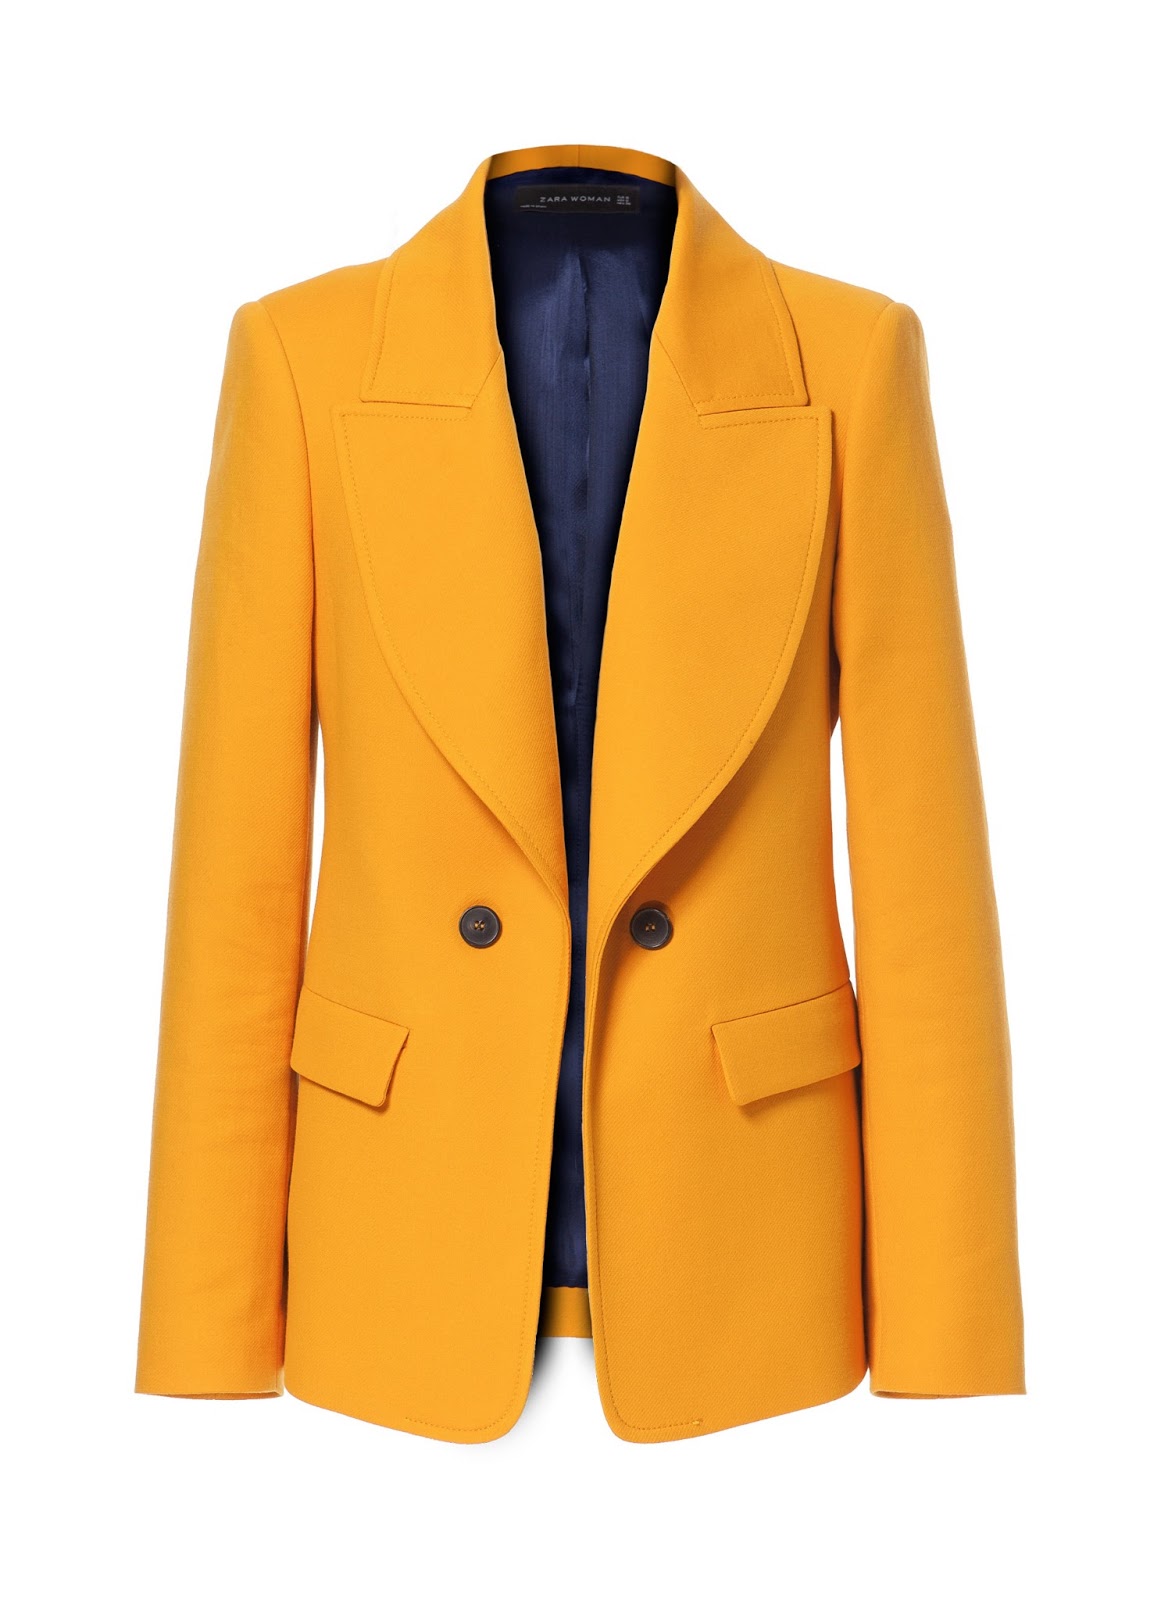 London Personal Shopper: Just in: Must See Zara Mustard Blazer